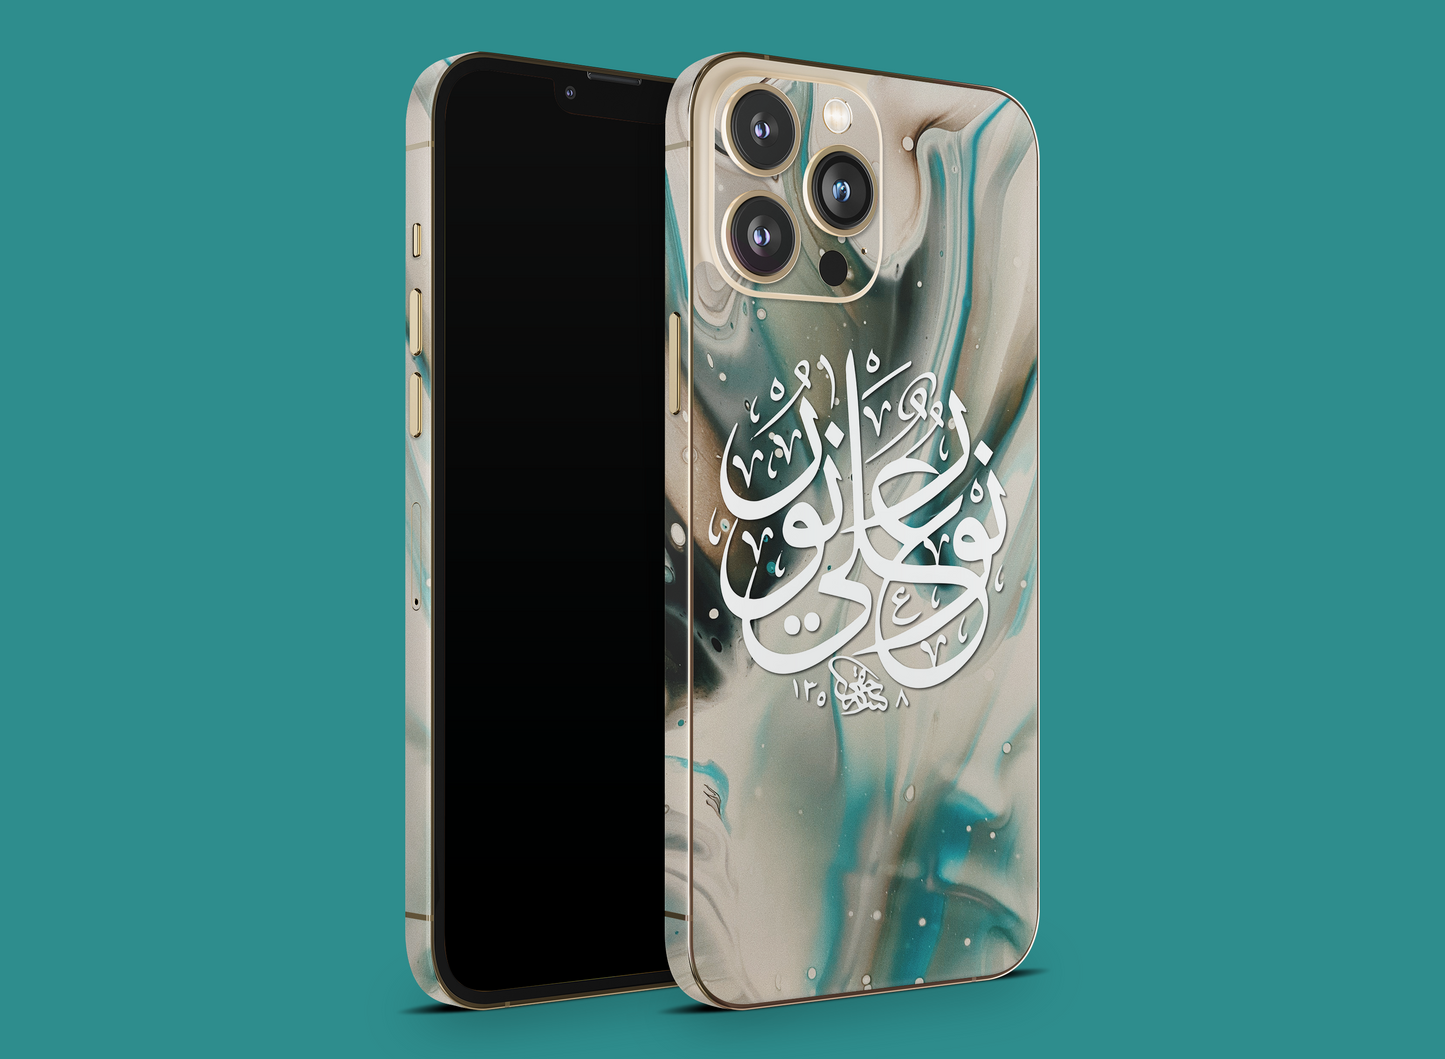 Islamic Art Phone Skin